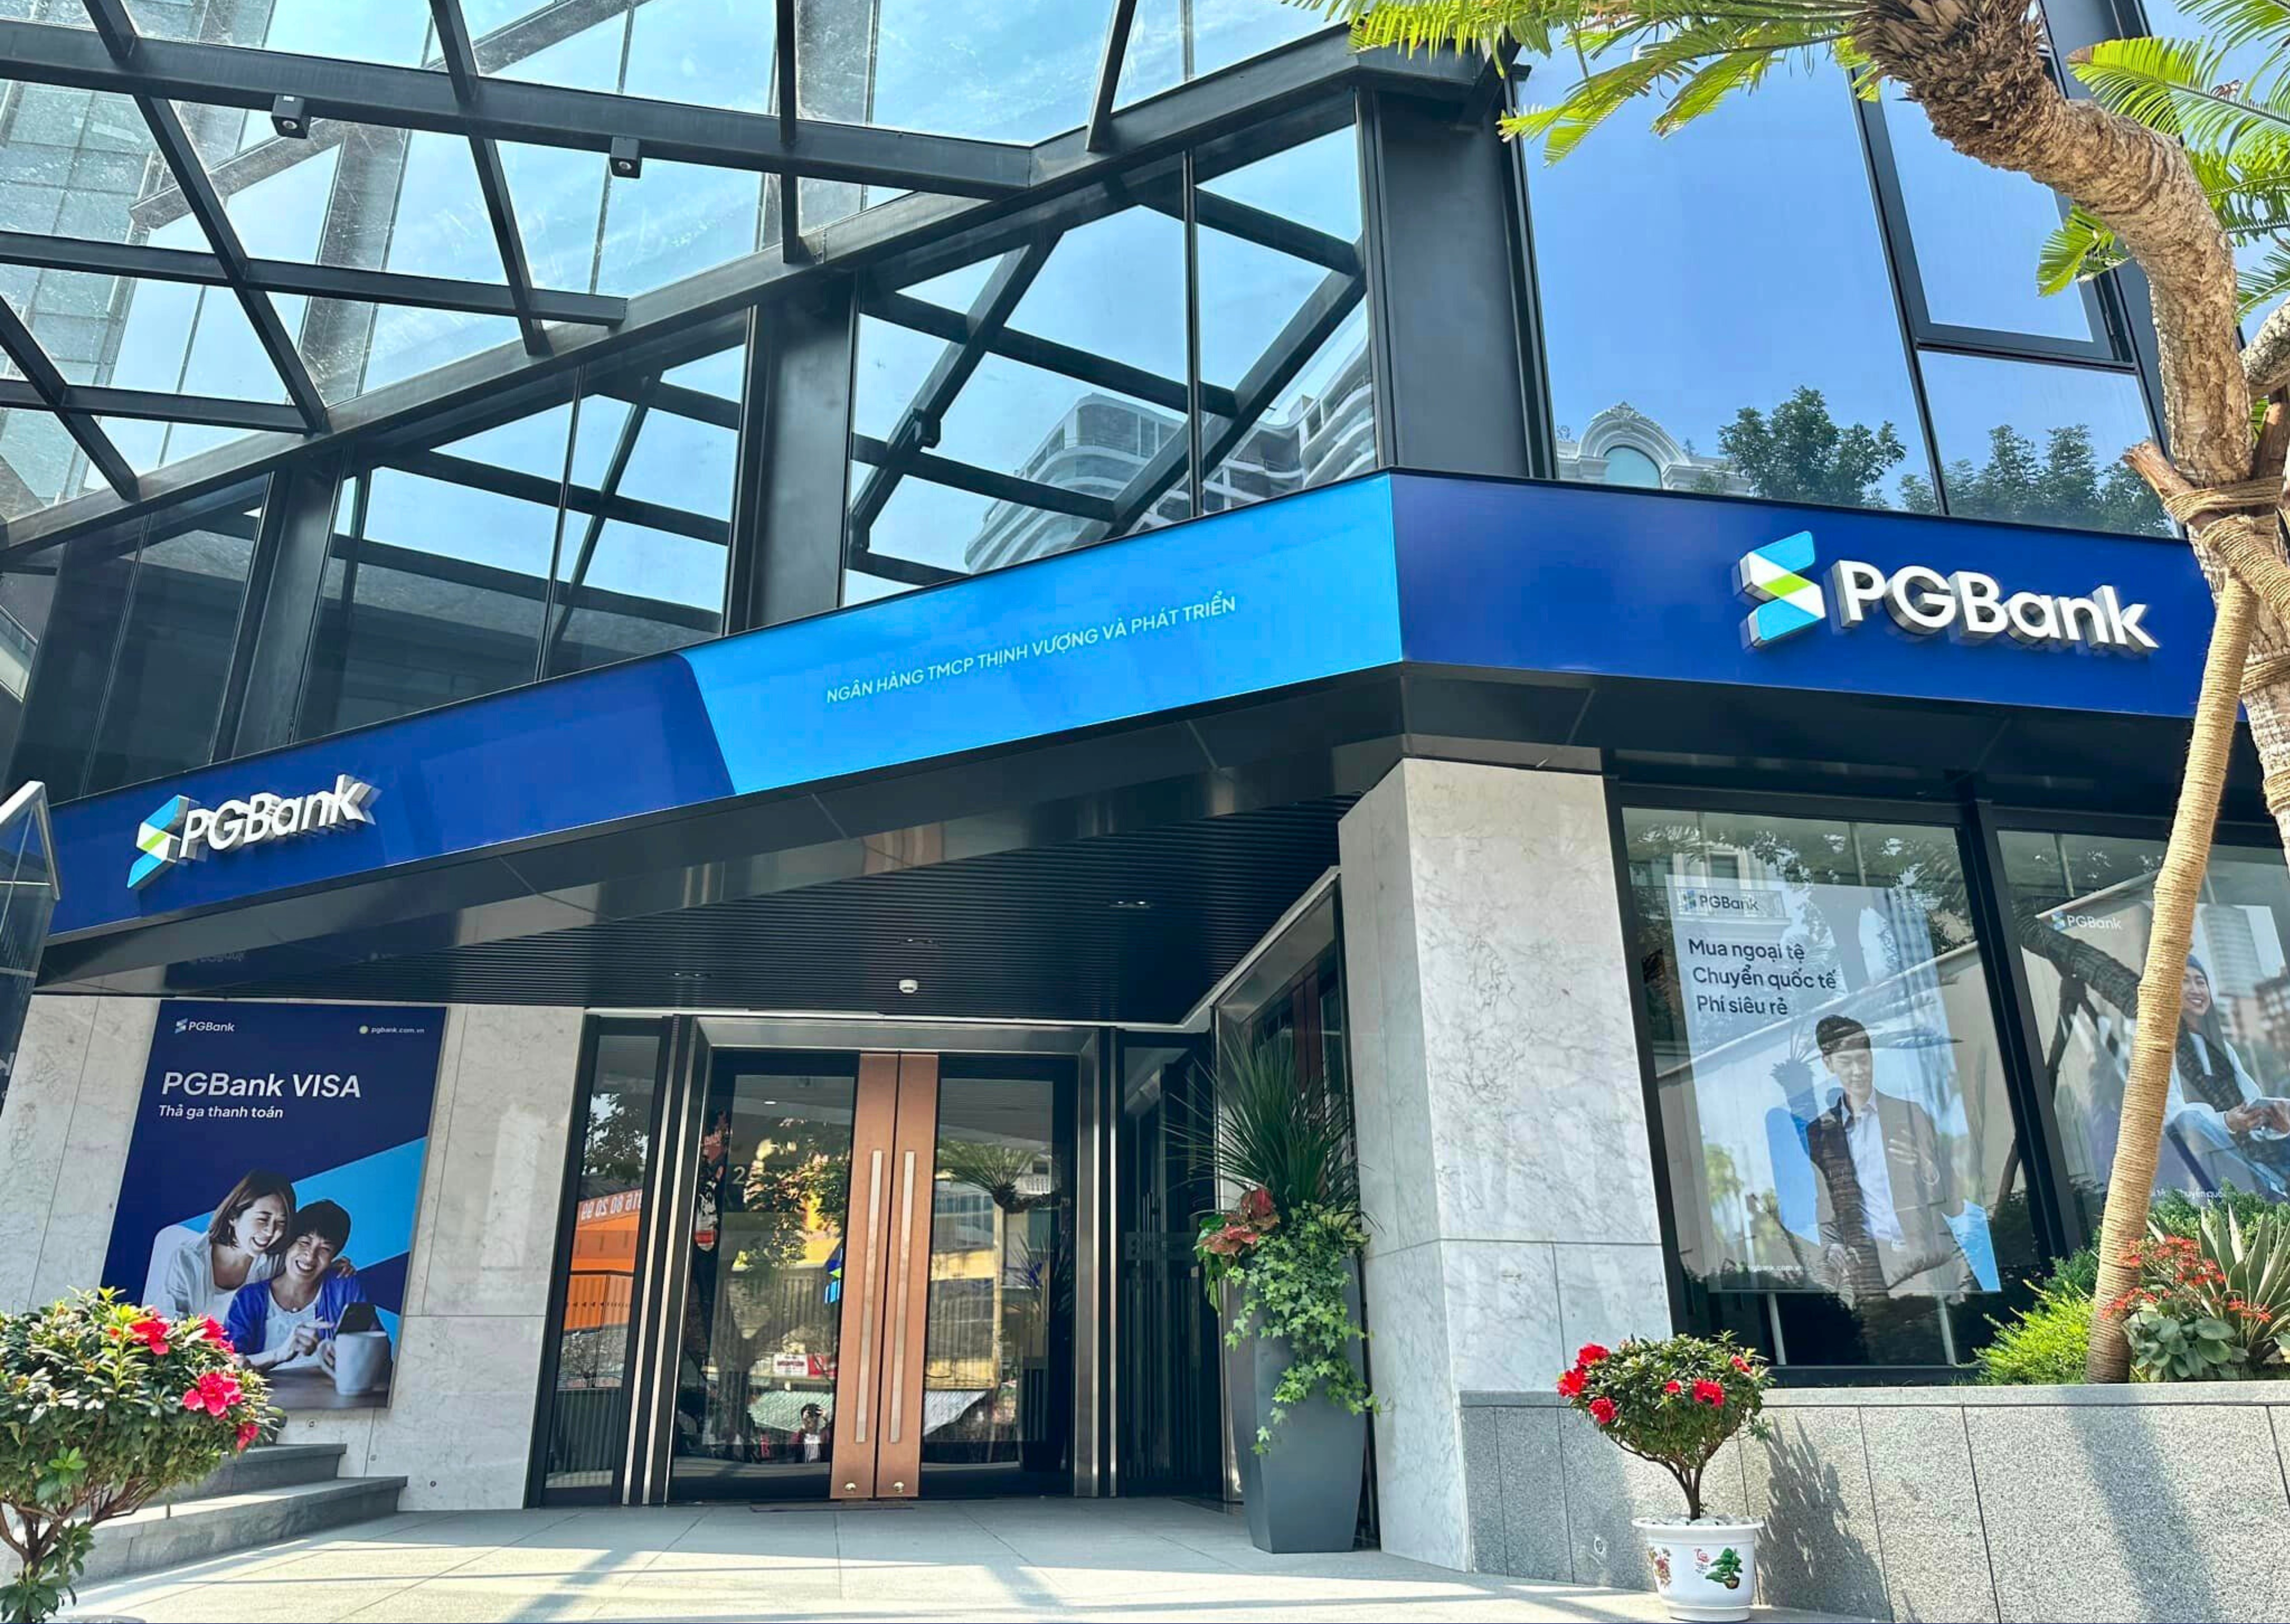 PG Bank hoàn thành tăng vốn, khai trương nhiều địa điểm và ra mắt bộ nhận diện mới - Ảnh 1